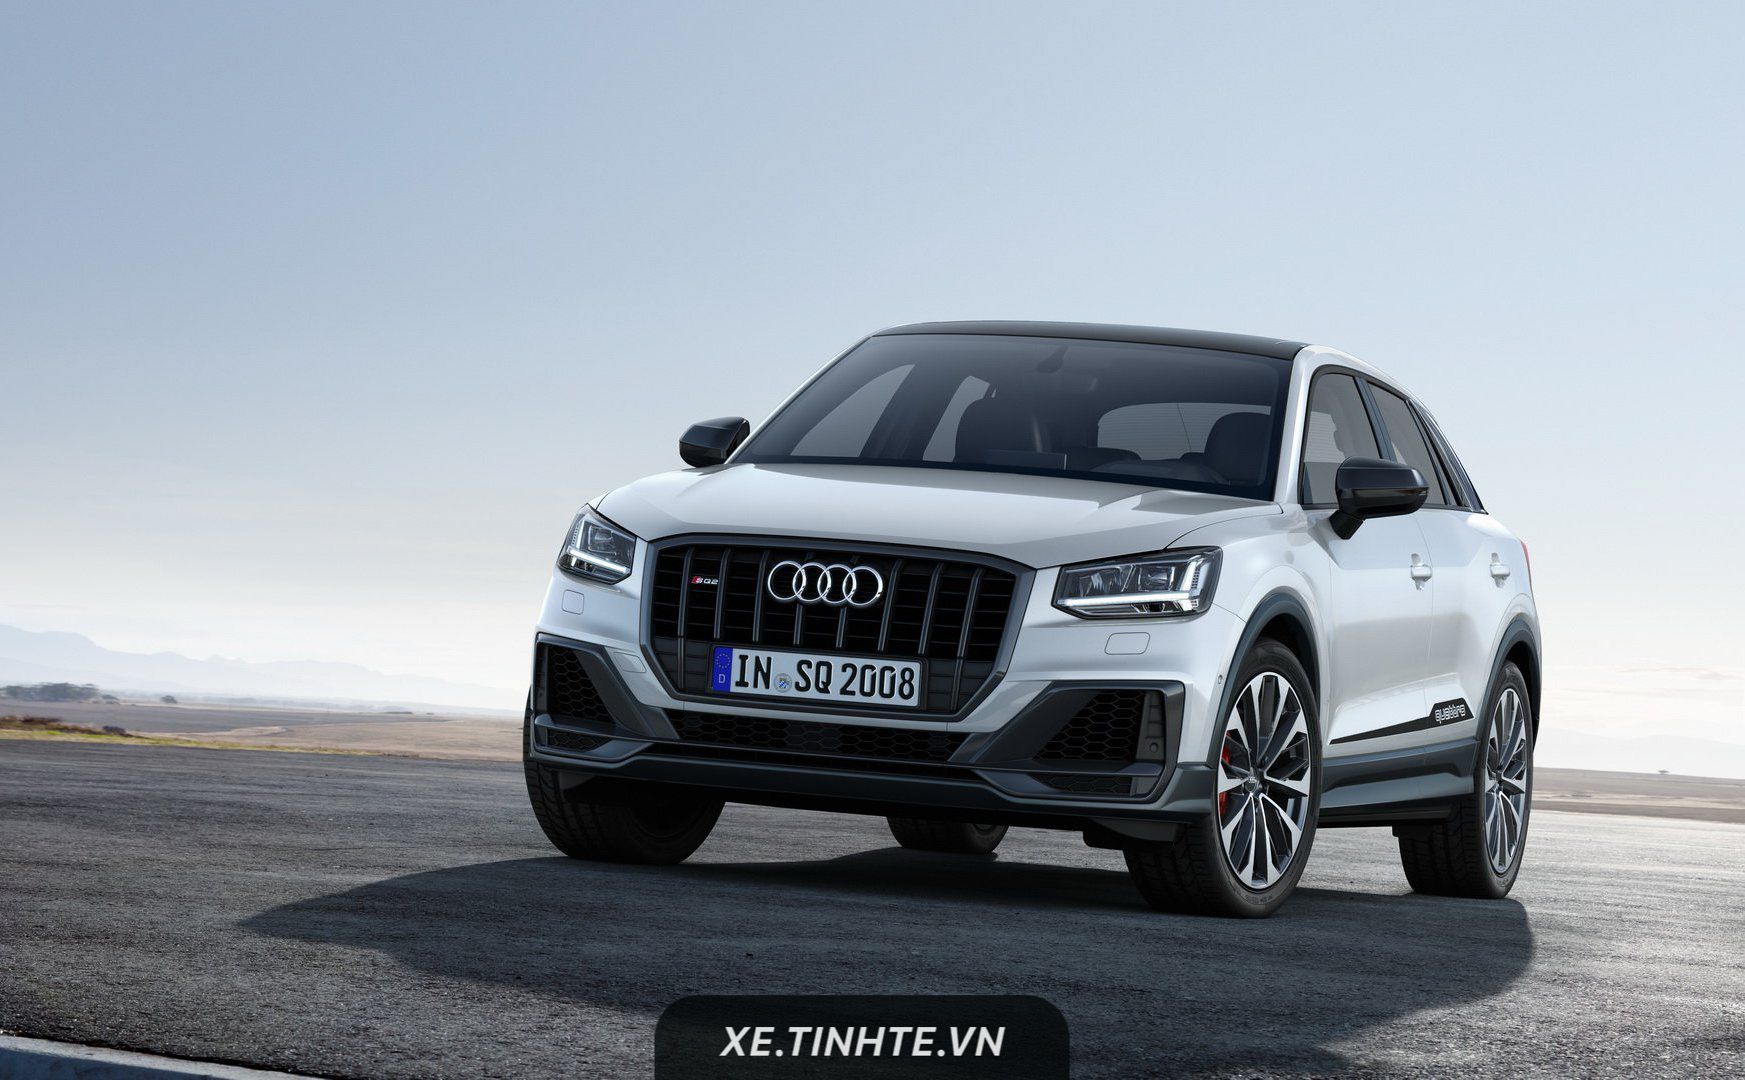 Audi giới thiệu SUV hiệu suất cao SQ2 2019, động cơ 296 mã lực, tăng tốc 0-100 km/h trong 4,8 giây